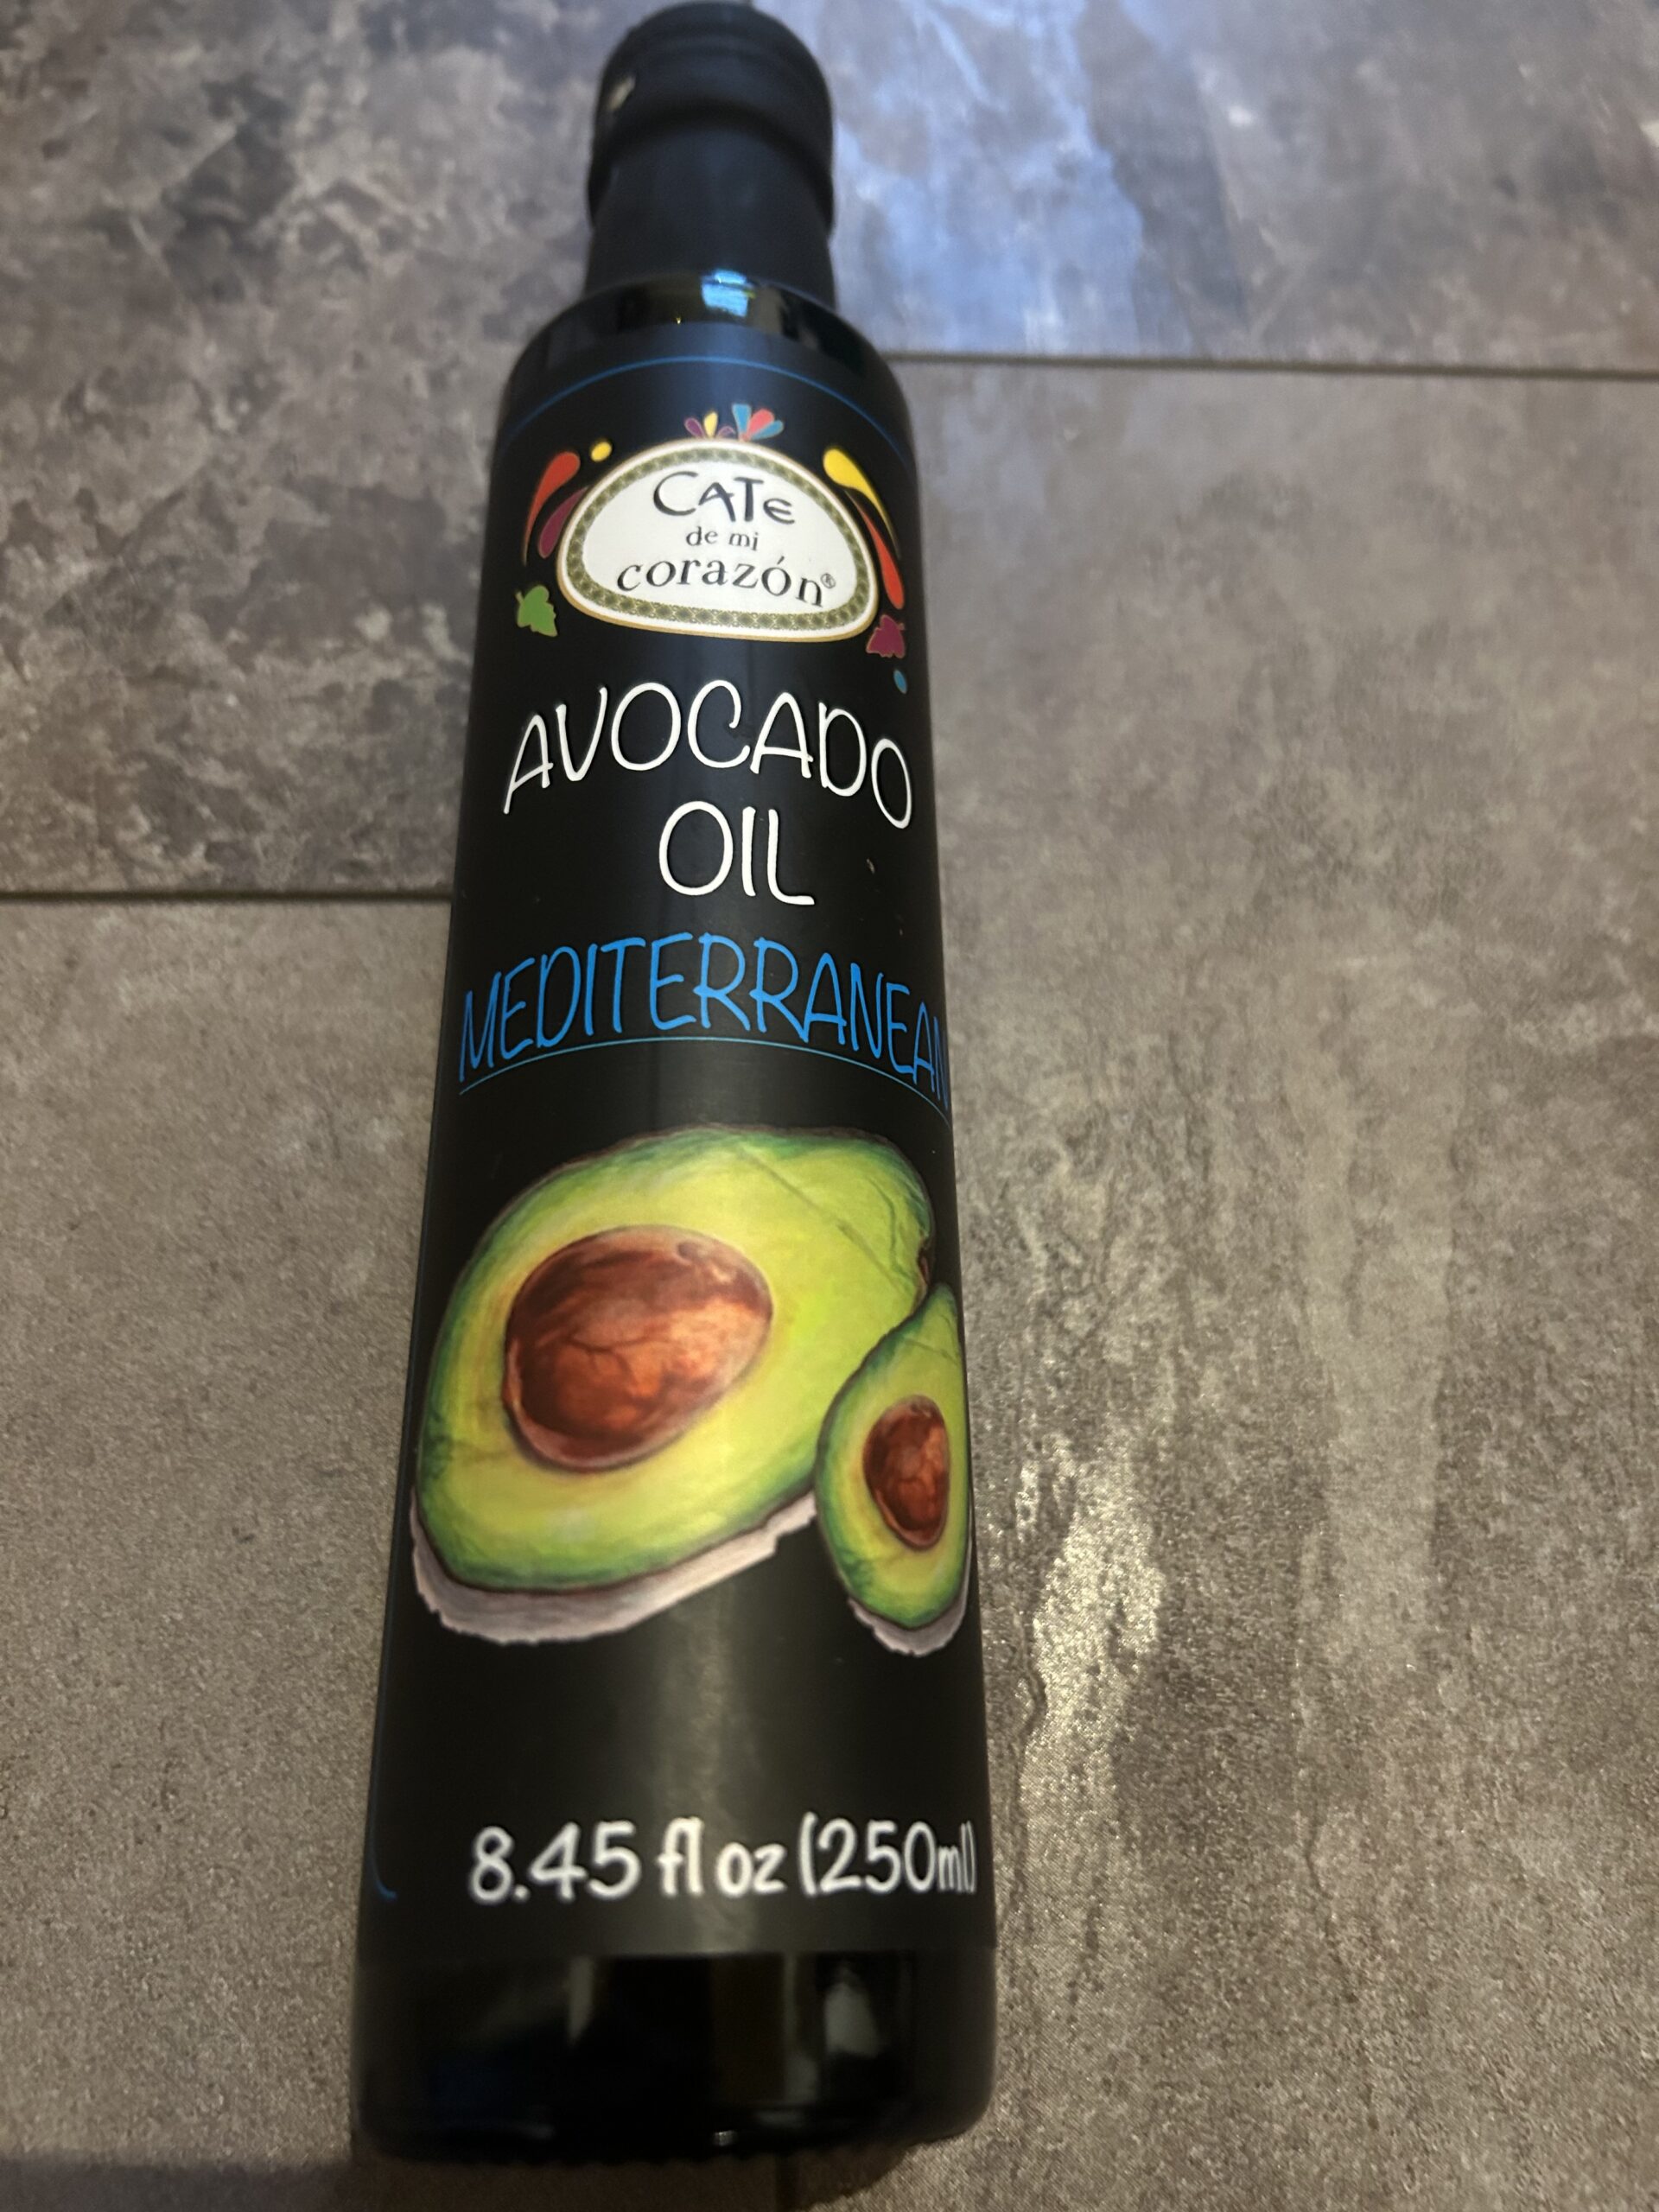 Cate De Mi Corazon Avocado Oil Mediterranean 250ml